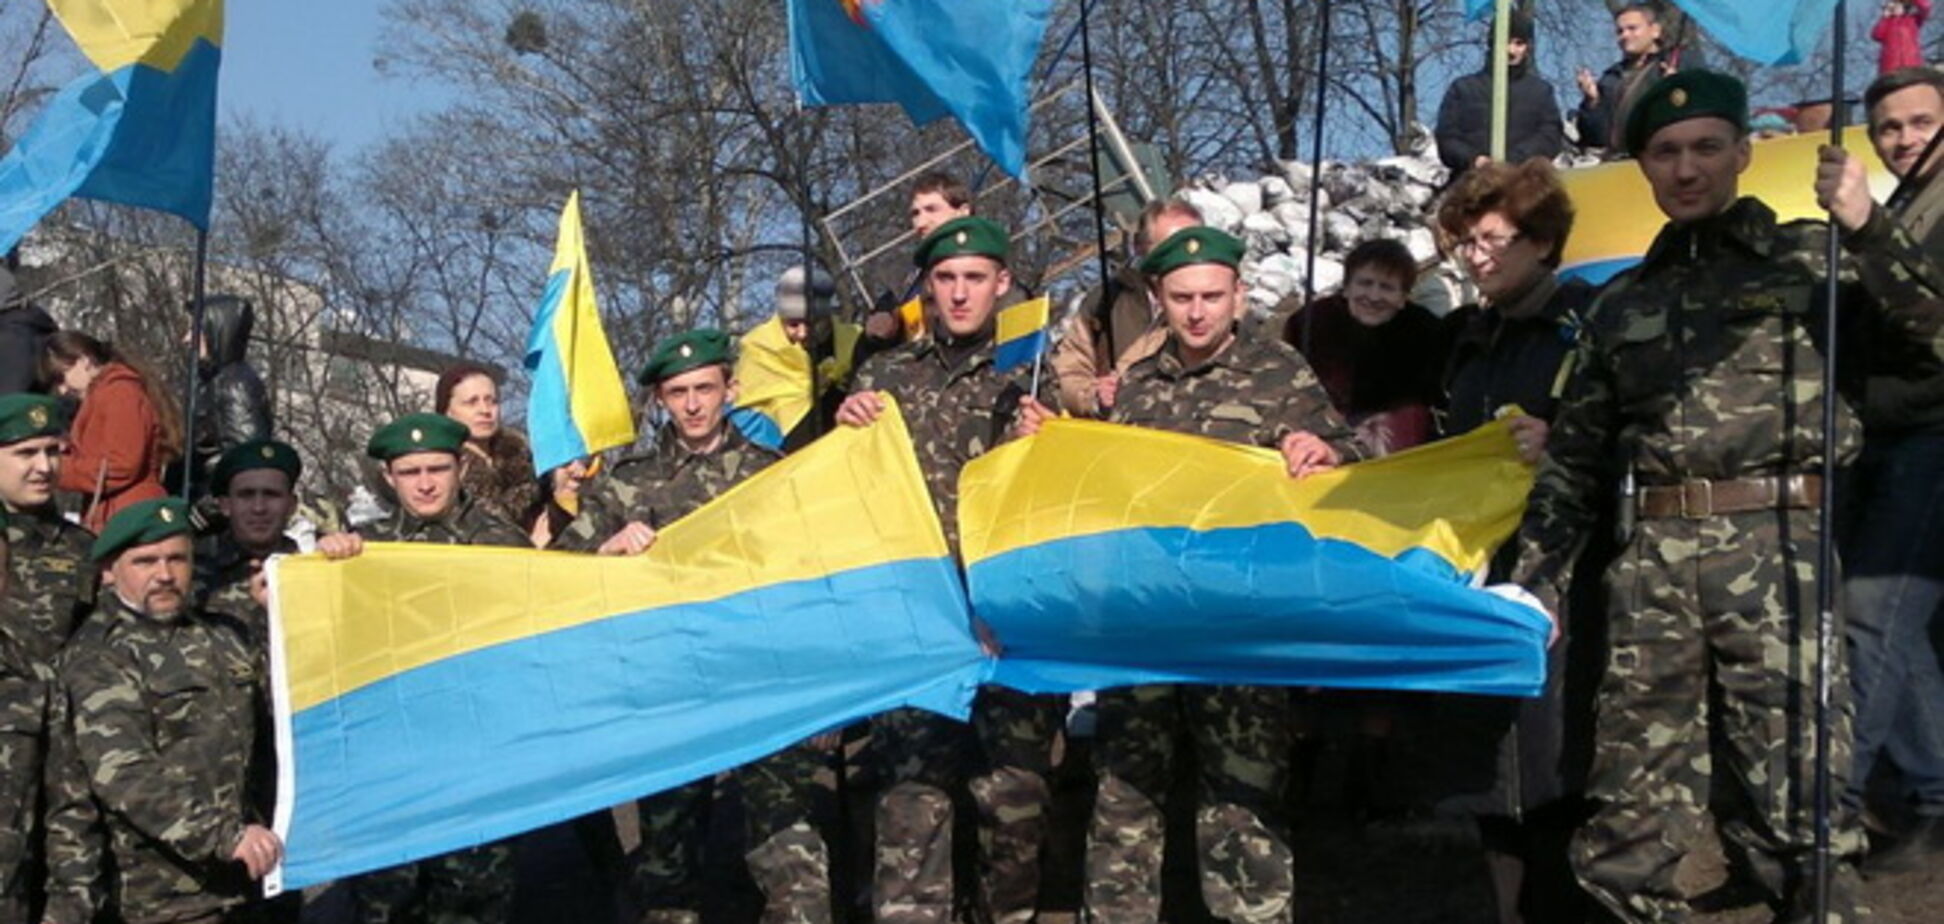 Ветеран-миротворец уверен, что украинская армия в состоянии 'навести порядок' на Донбассе